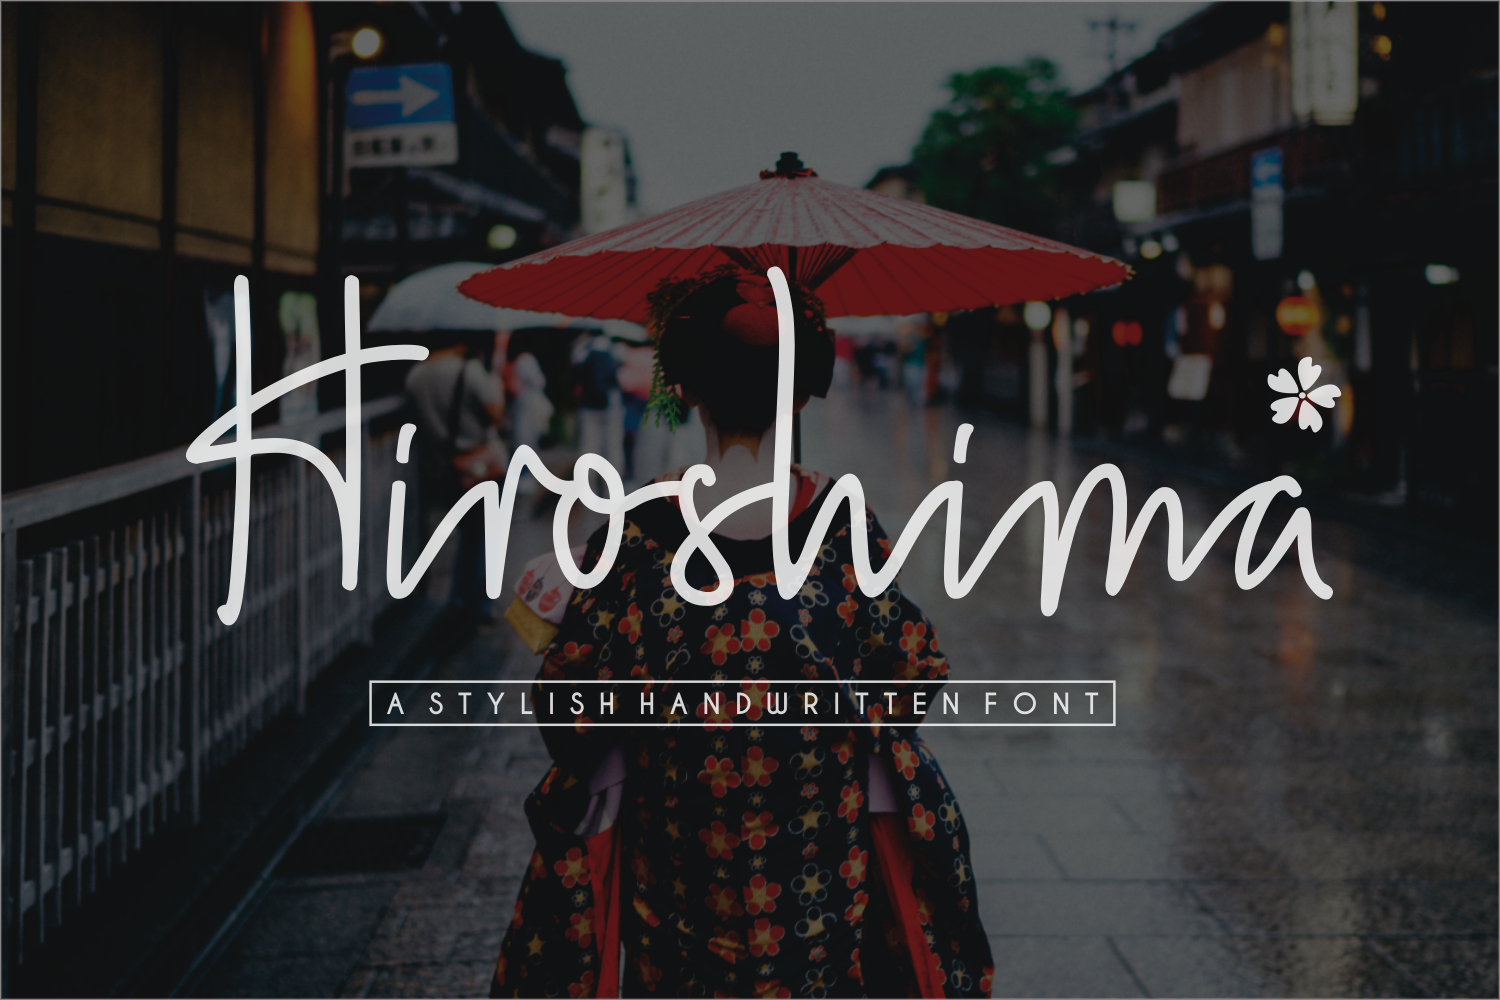 Hiroshima Font